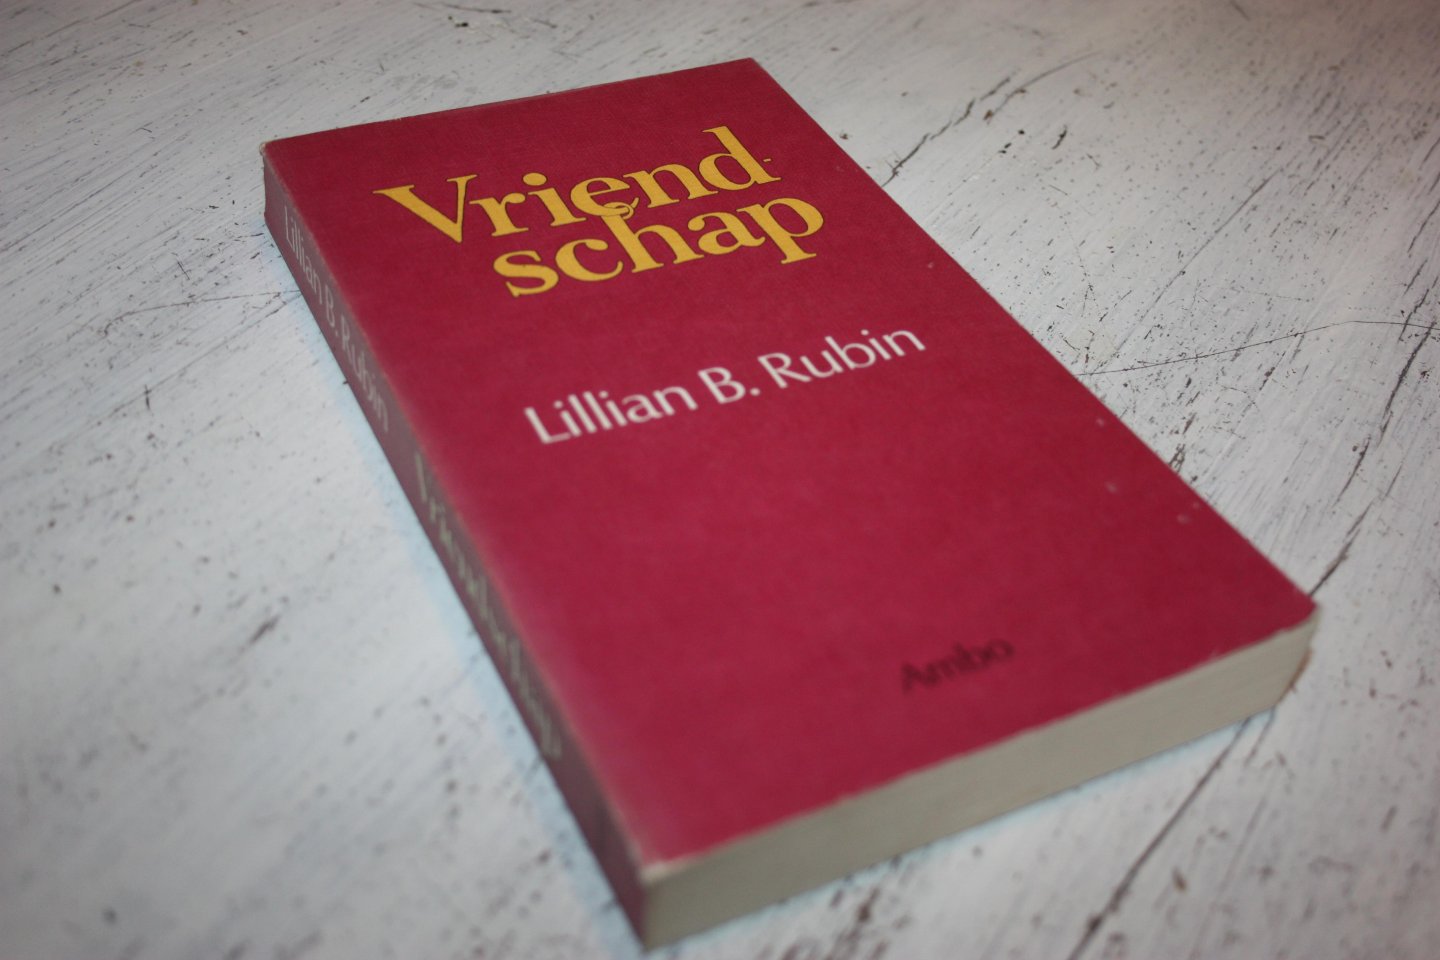 Rubin, Lillian B. - Lillian B. Rubin /  VRIENDSCHAP